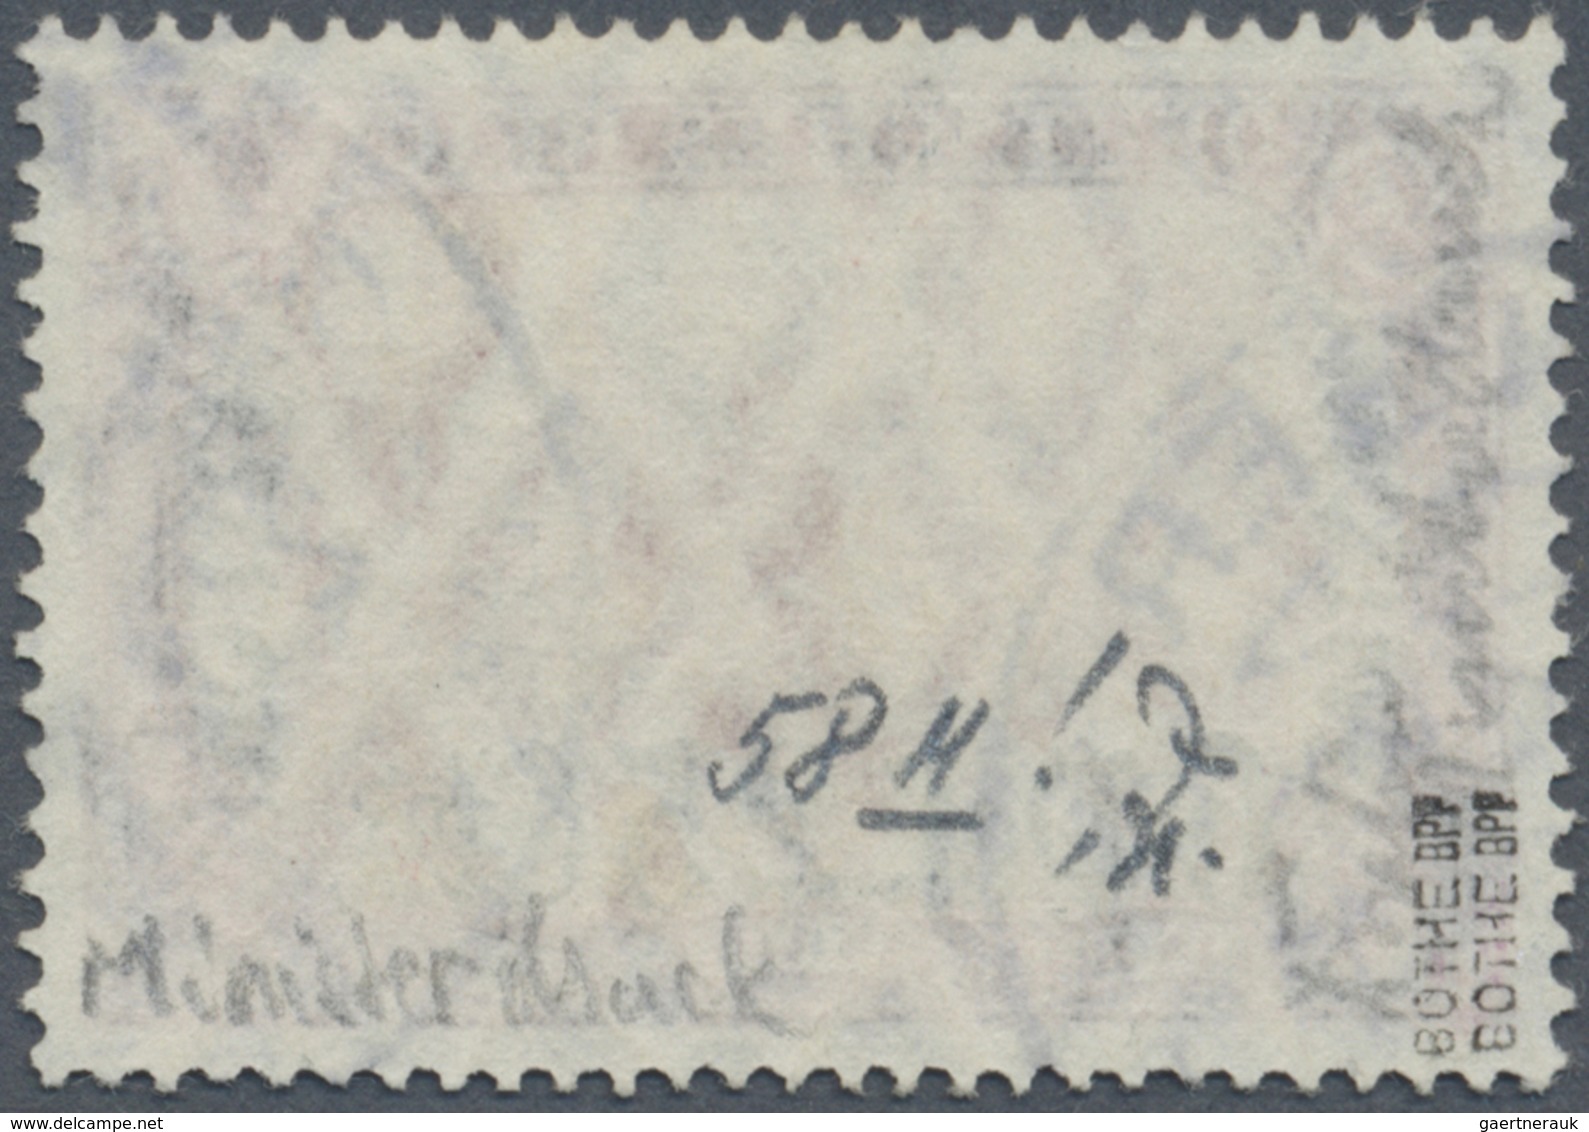 O Deutsche Post In Marokko: 1911, Freimarke 6 P 25 C Auf 5M Schwarz/dunkelkarmin, Als Seltener Ministe - Deutsche Post In Marokko